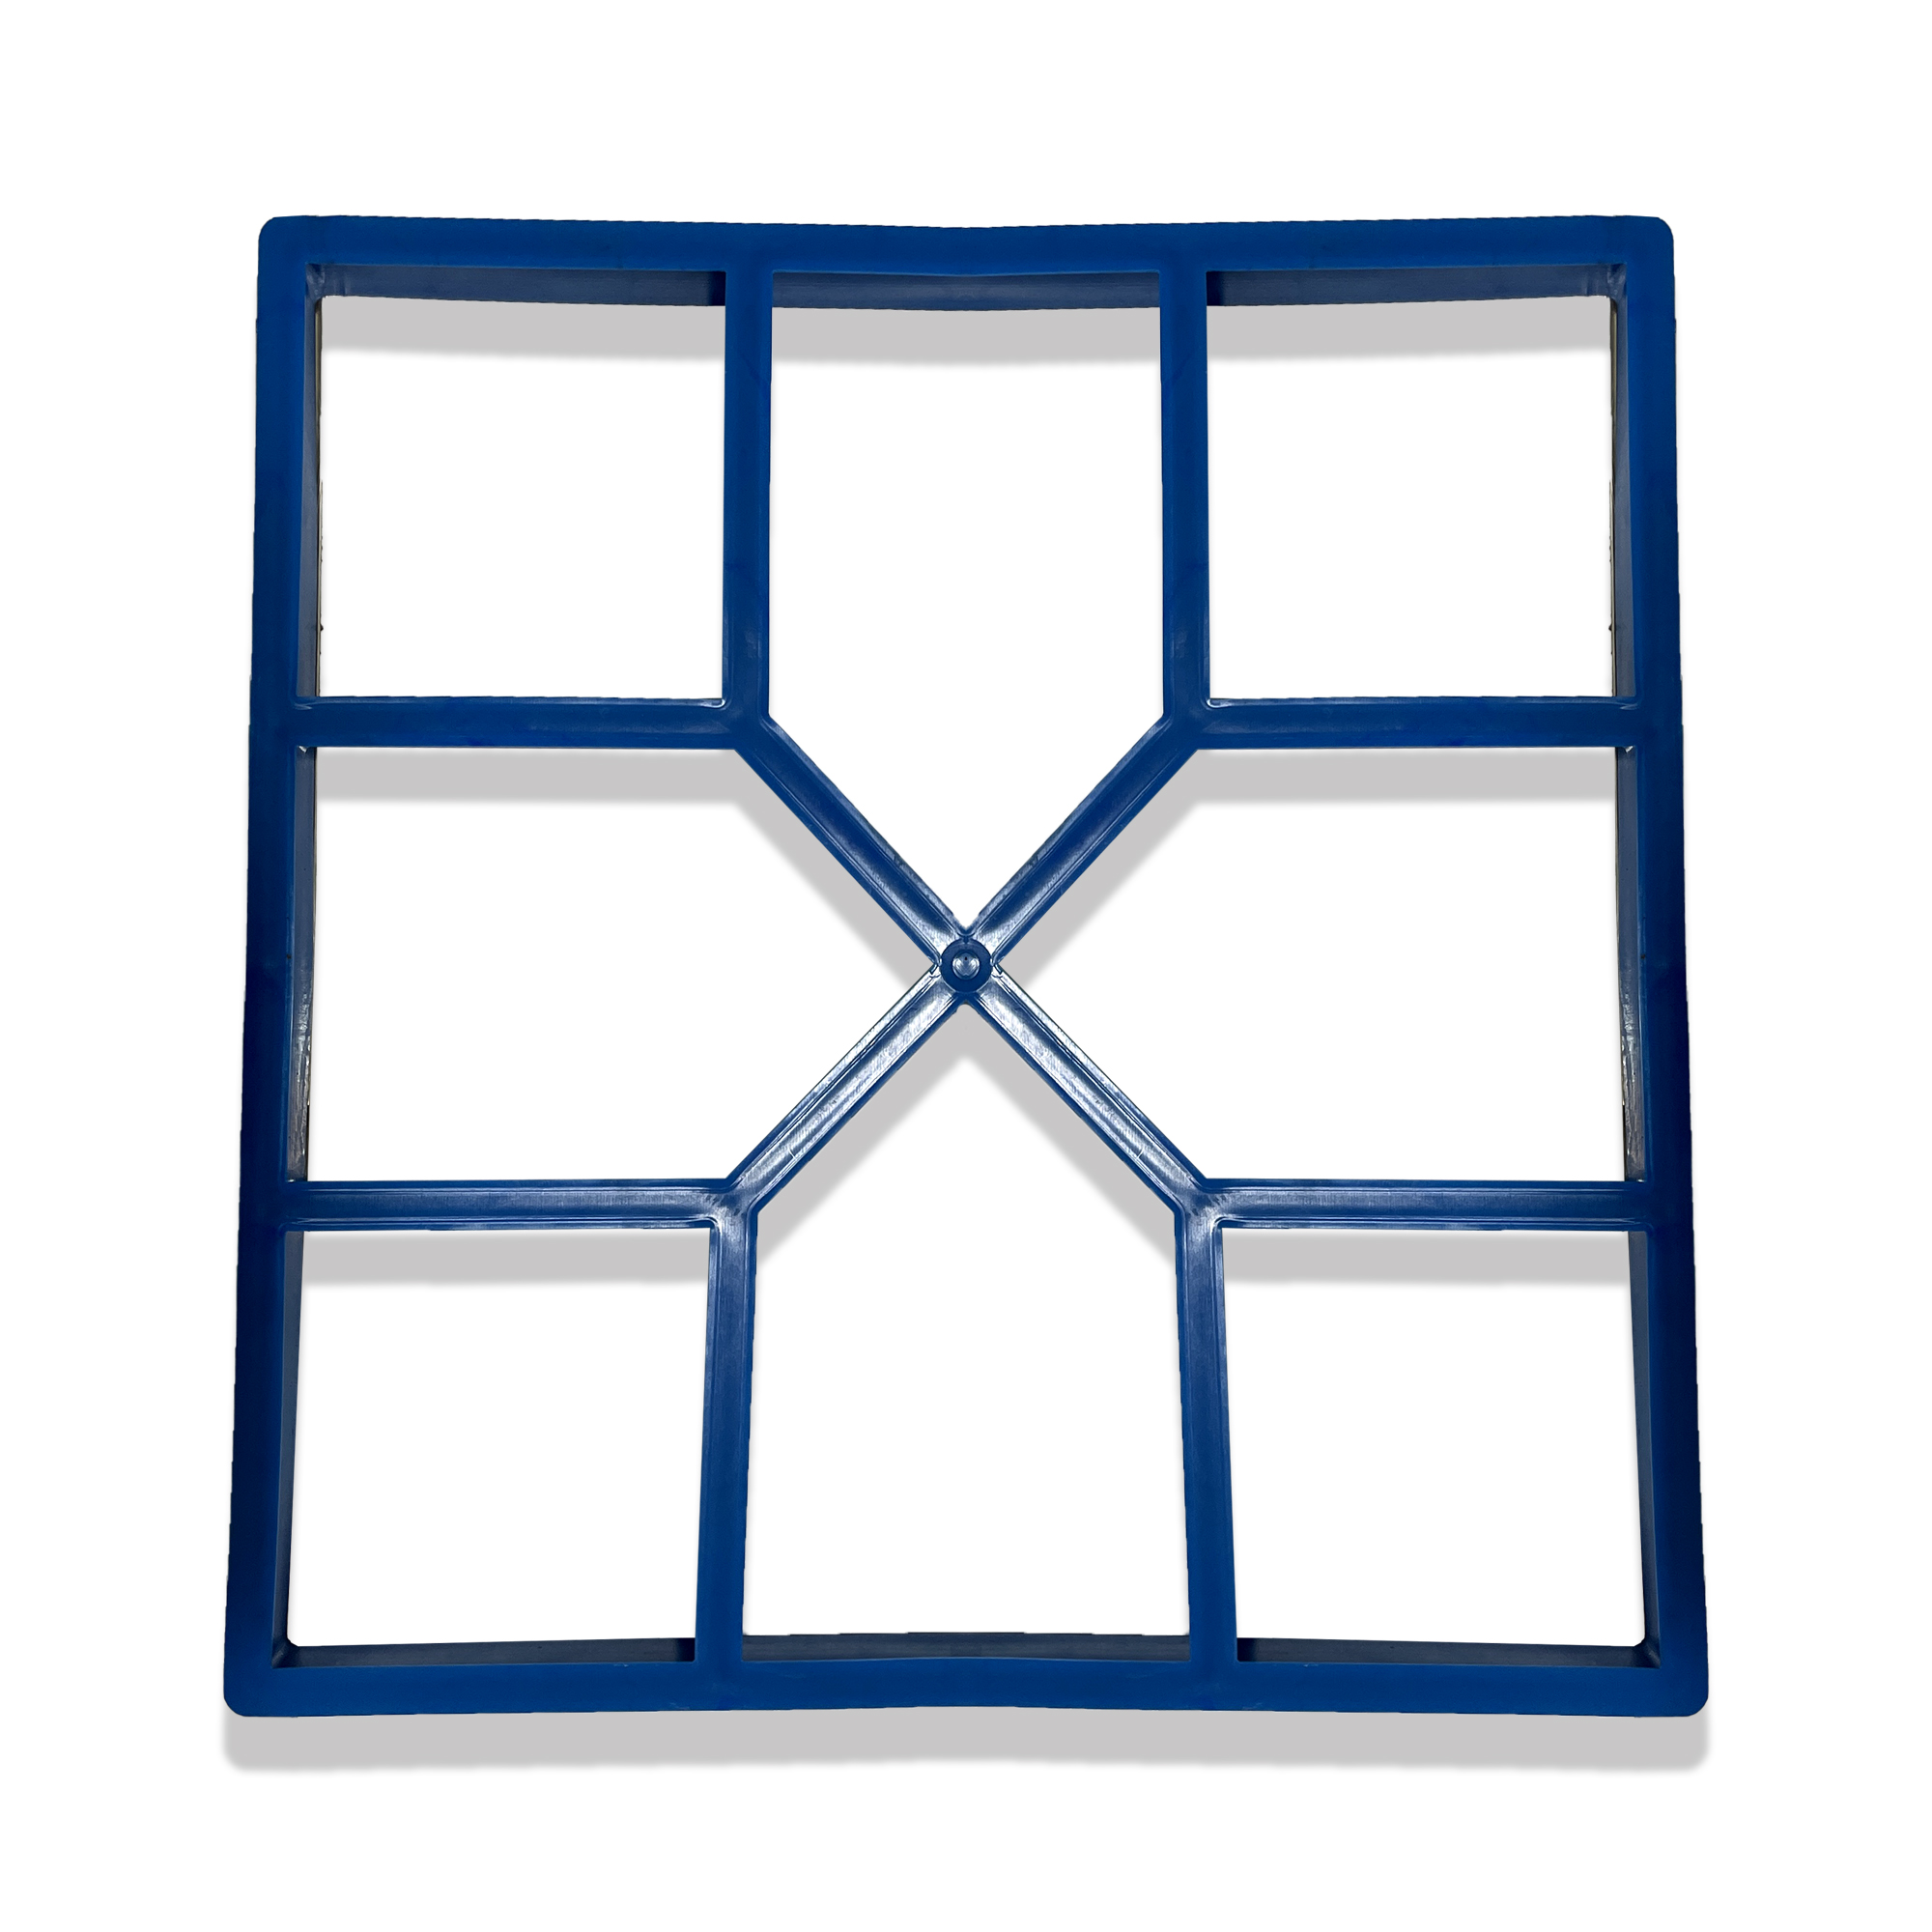 قالب سنگ فرش مدل پنجره ای